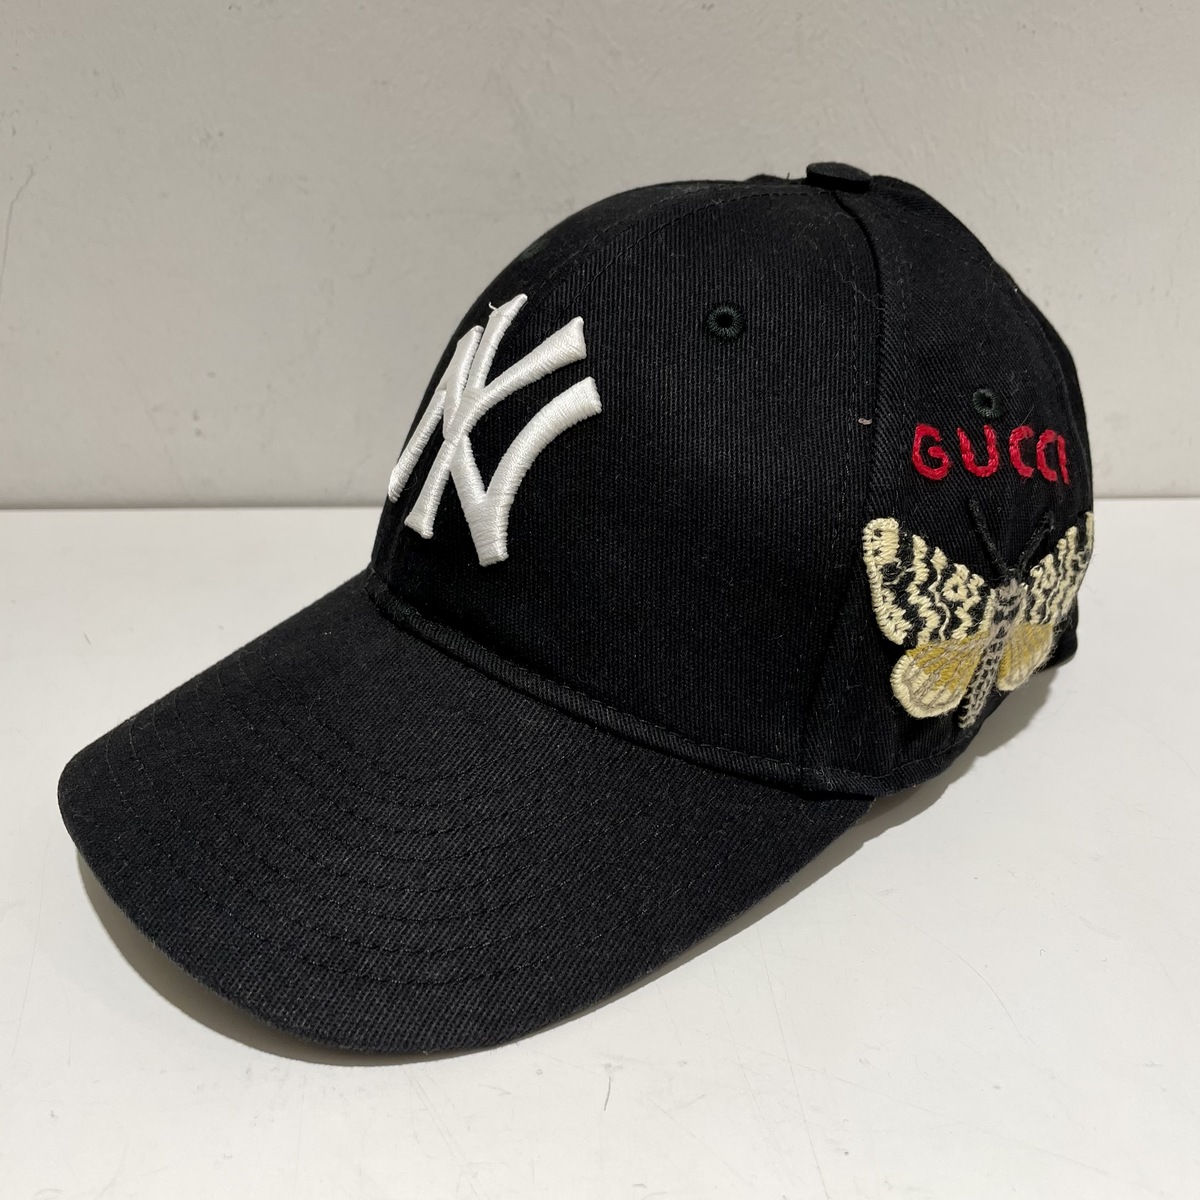 グッチのブラック ×ニューヨークヤンキース 538565 4HE20 2018秋冬 バタフライパッチ ベースボールキャップの買取実績です。